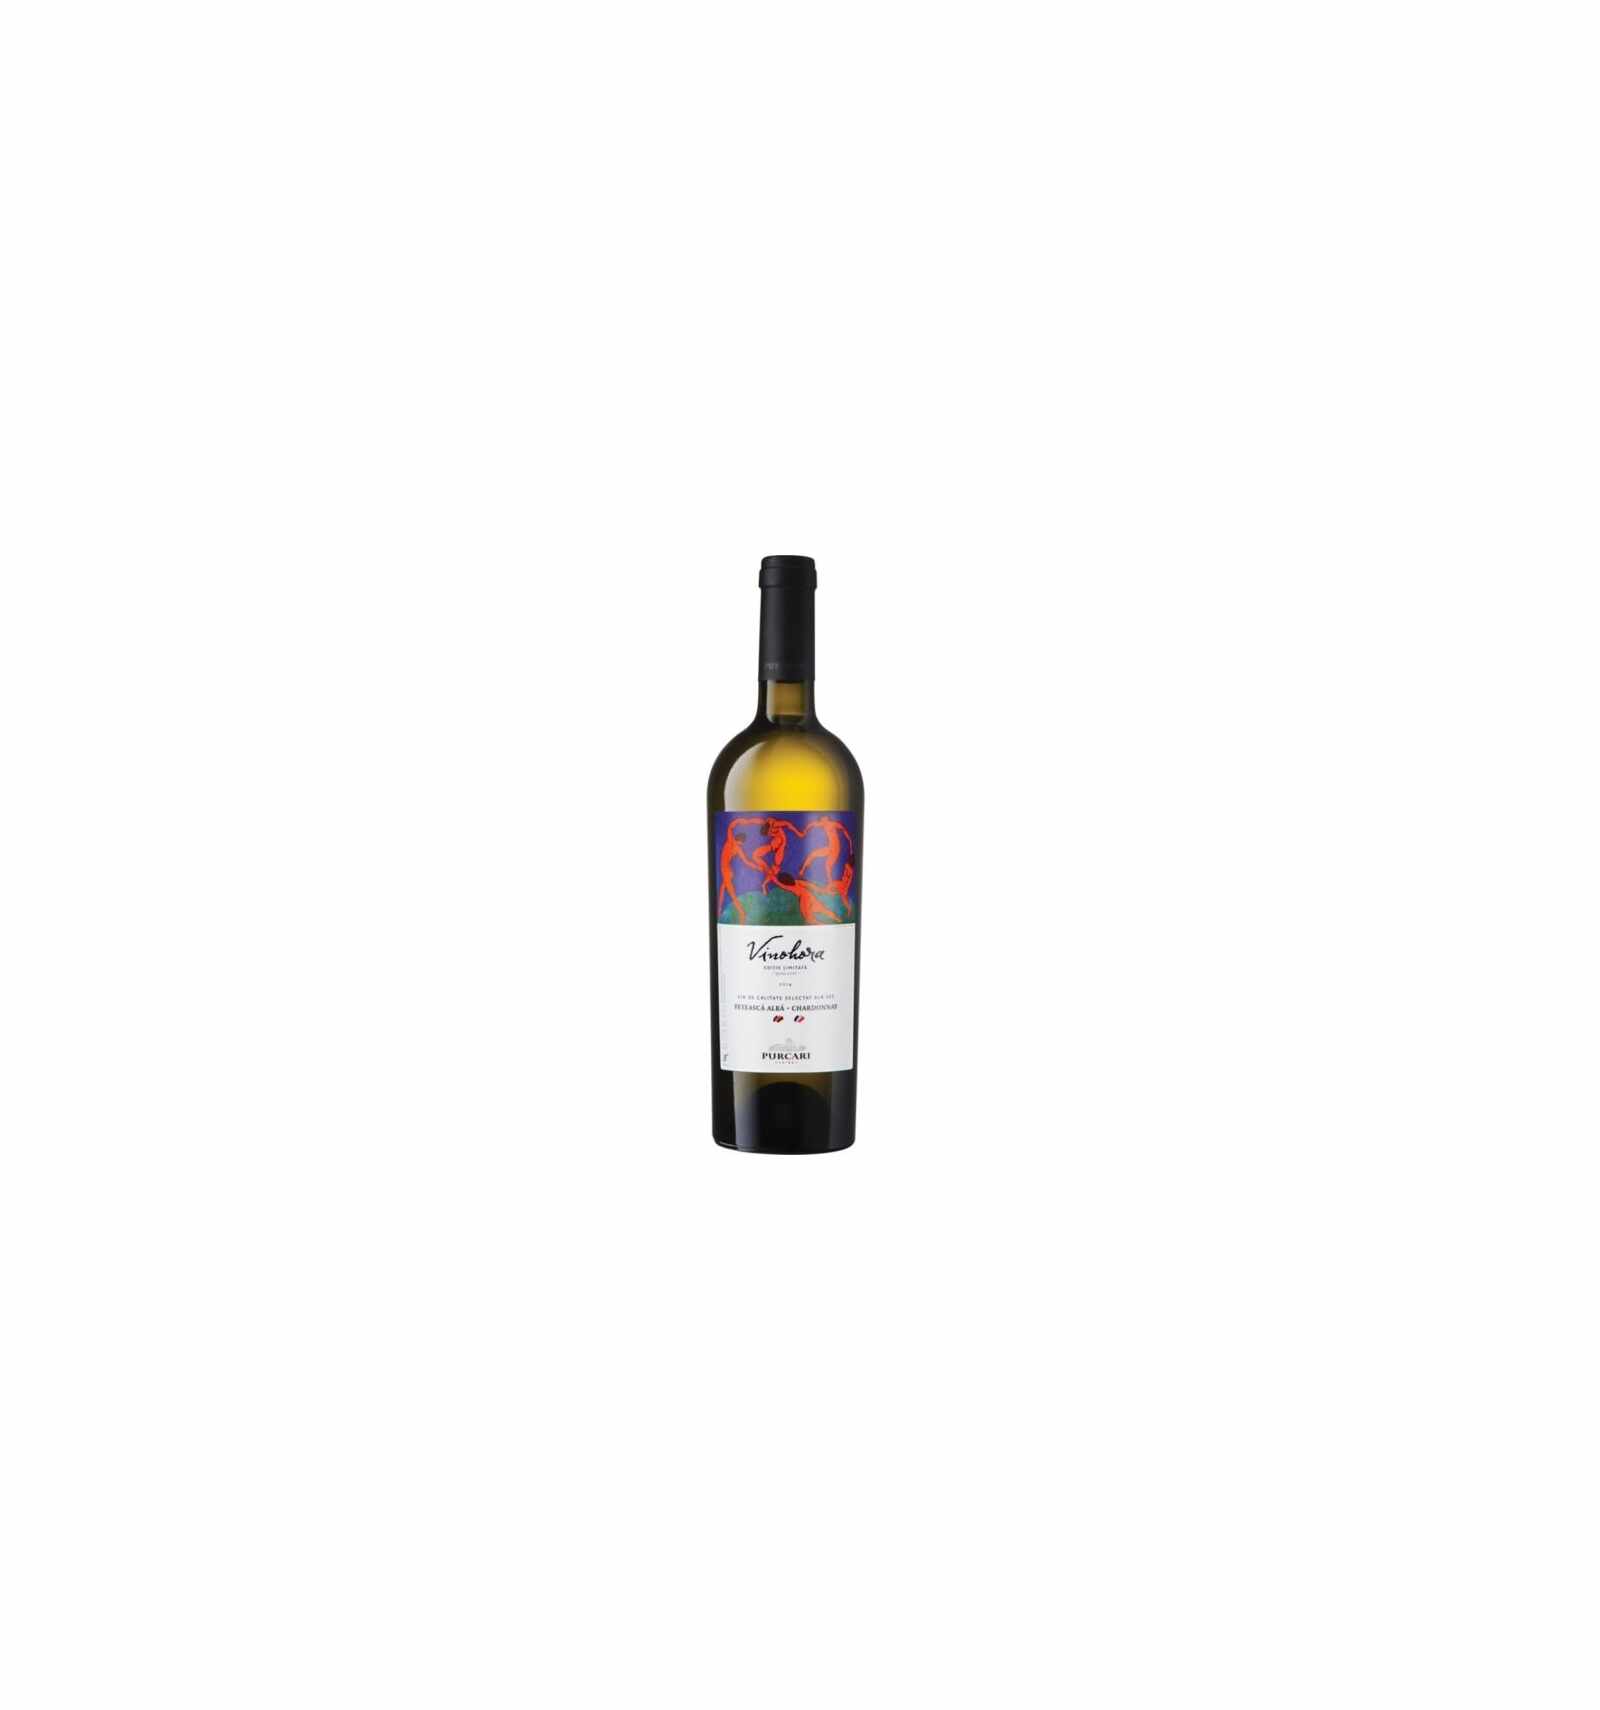 Vin alb sec, Feteasca Alba-Chardonnay, Purcari Vinohora Stefan Voda, 0.75L, 13.5% alc., Republica Moldova